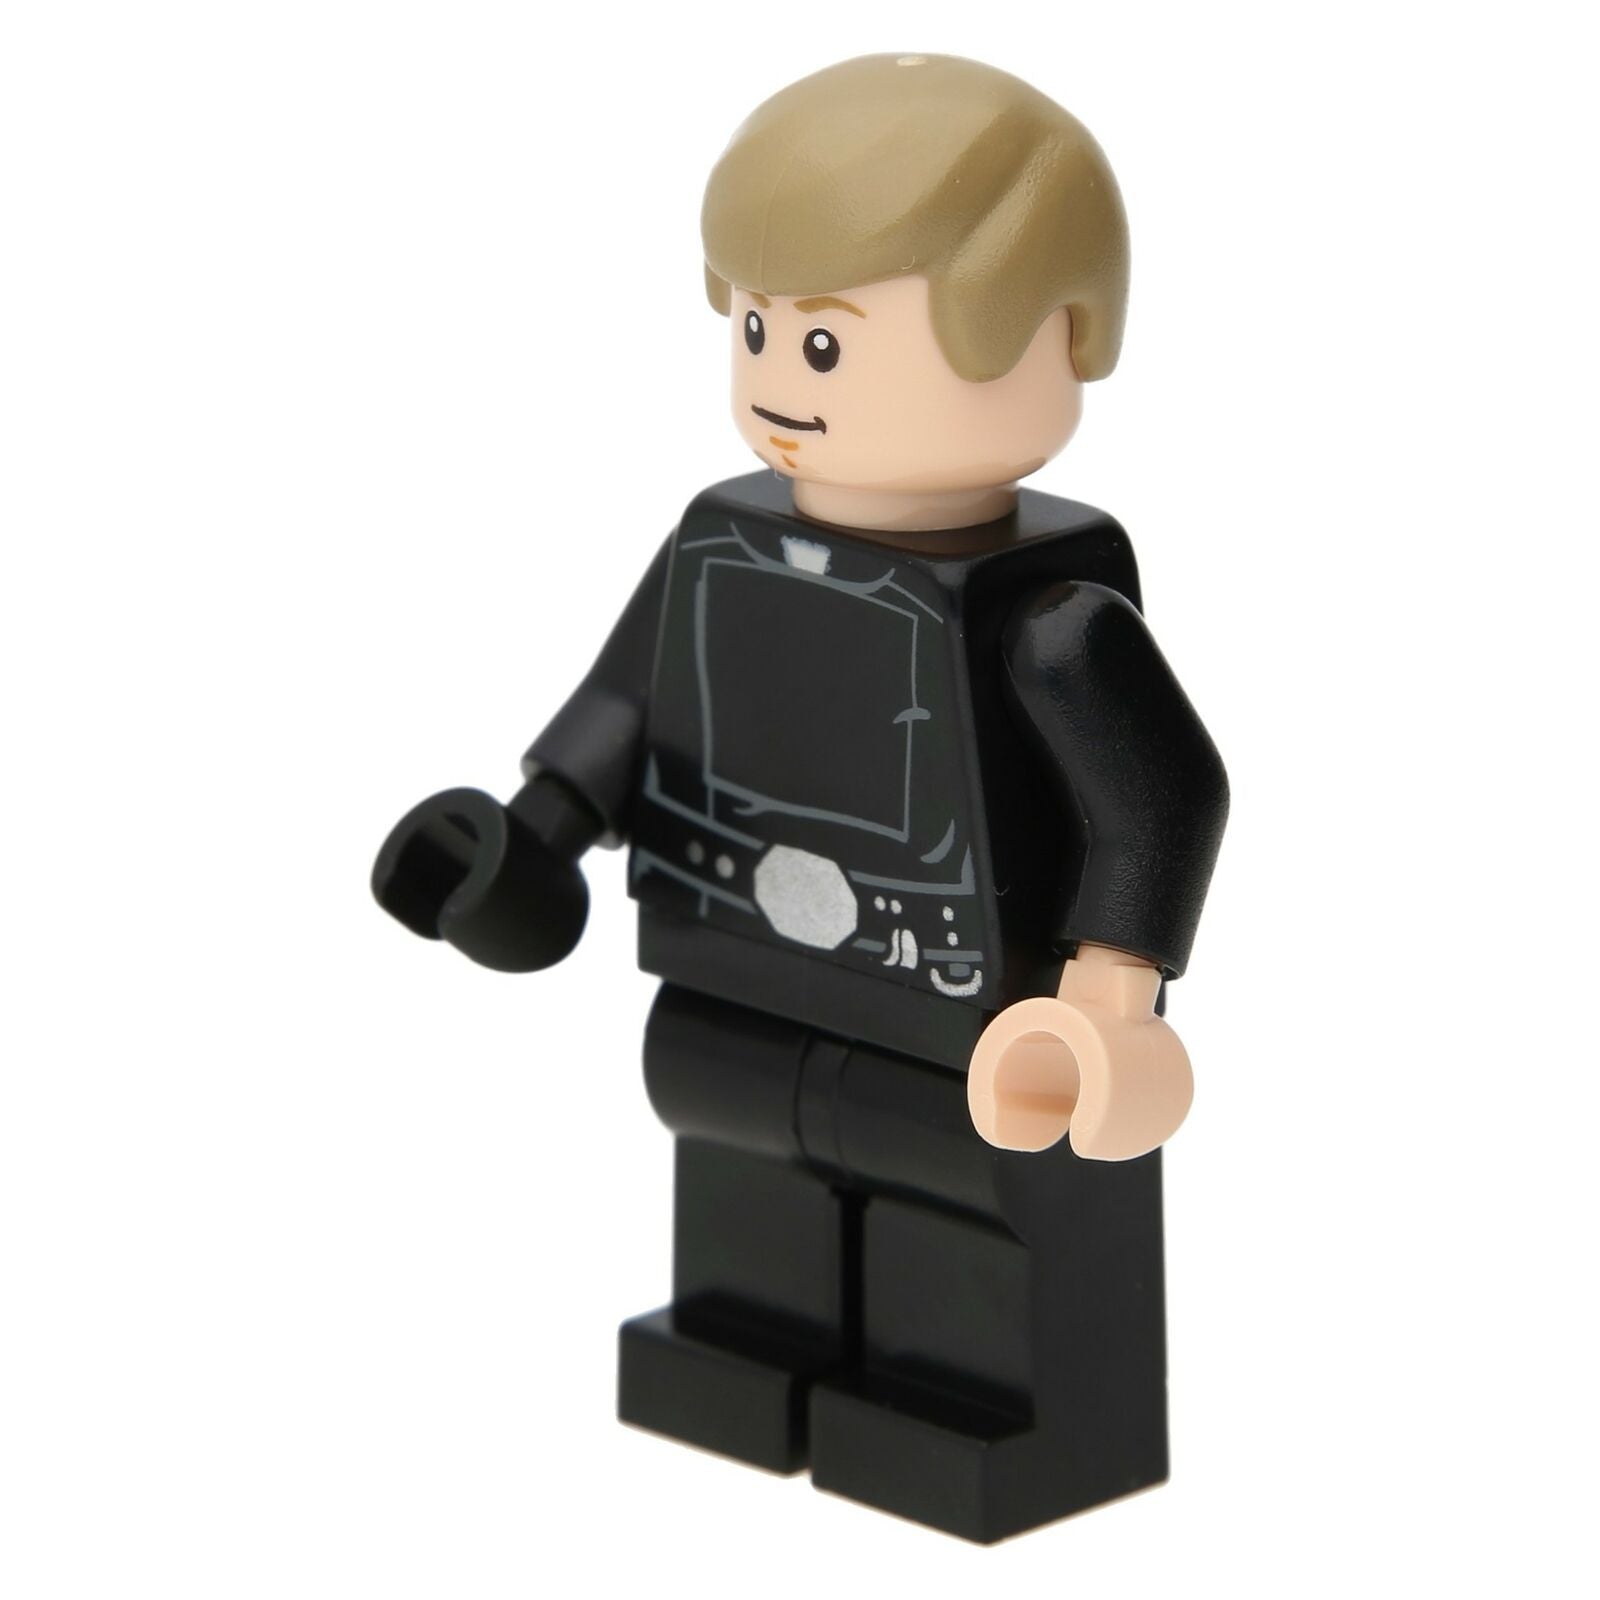 LEGO Star Wars Minifigure - Luke Skywalker (Jedi Meister)